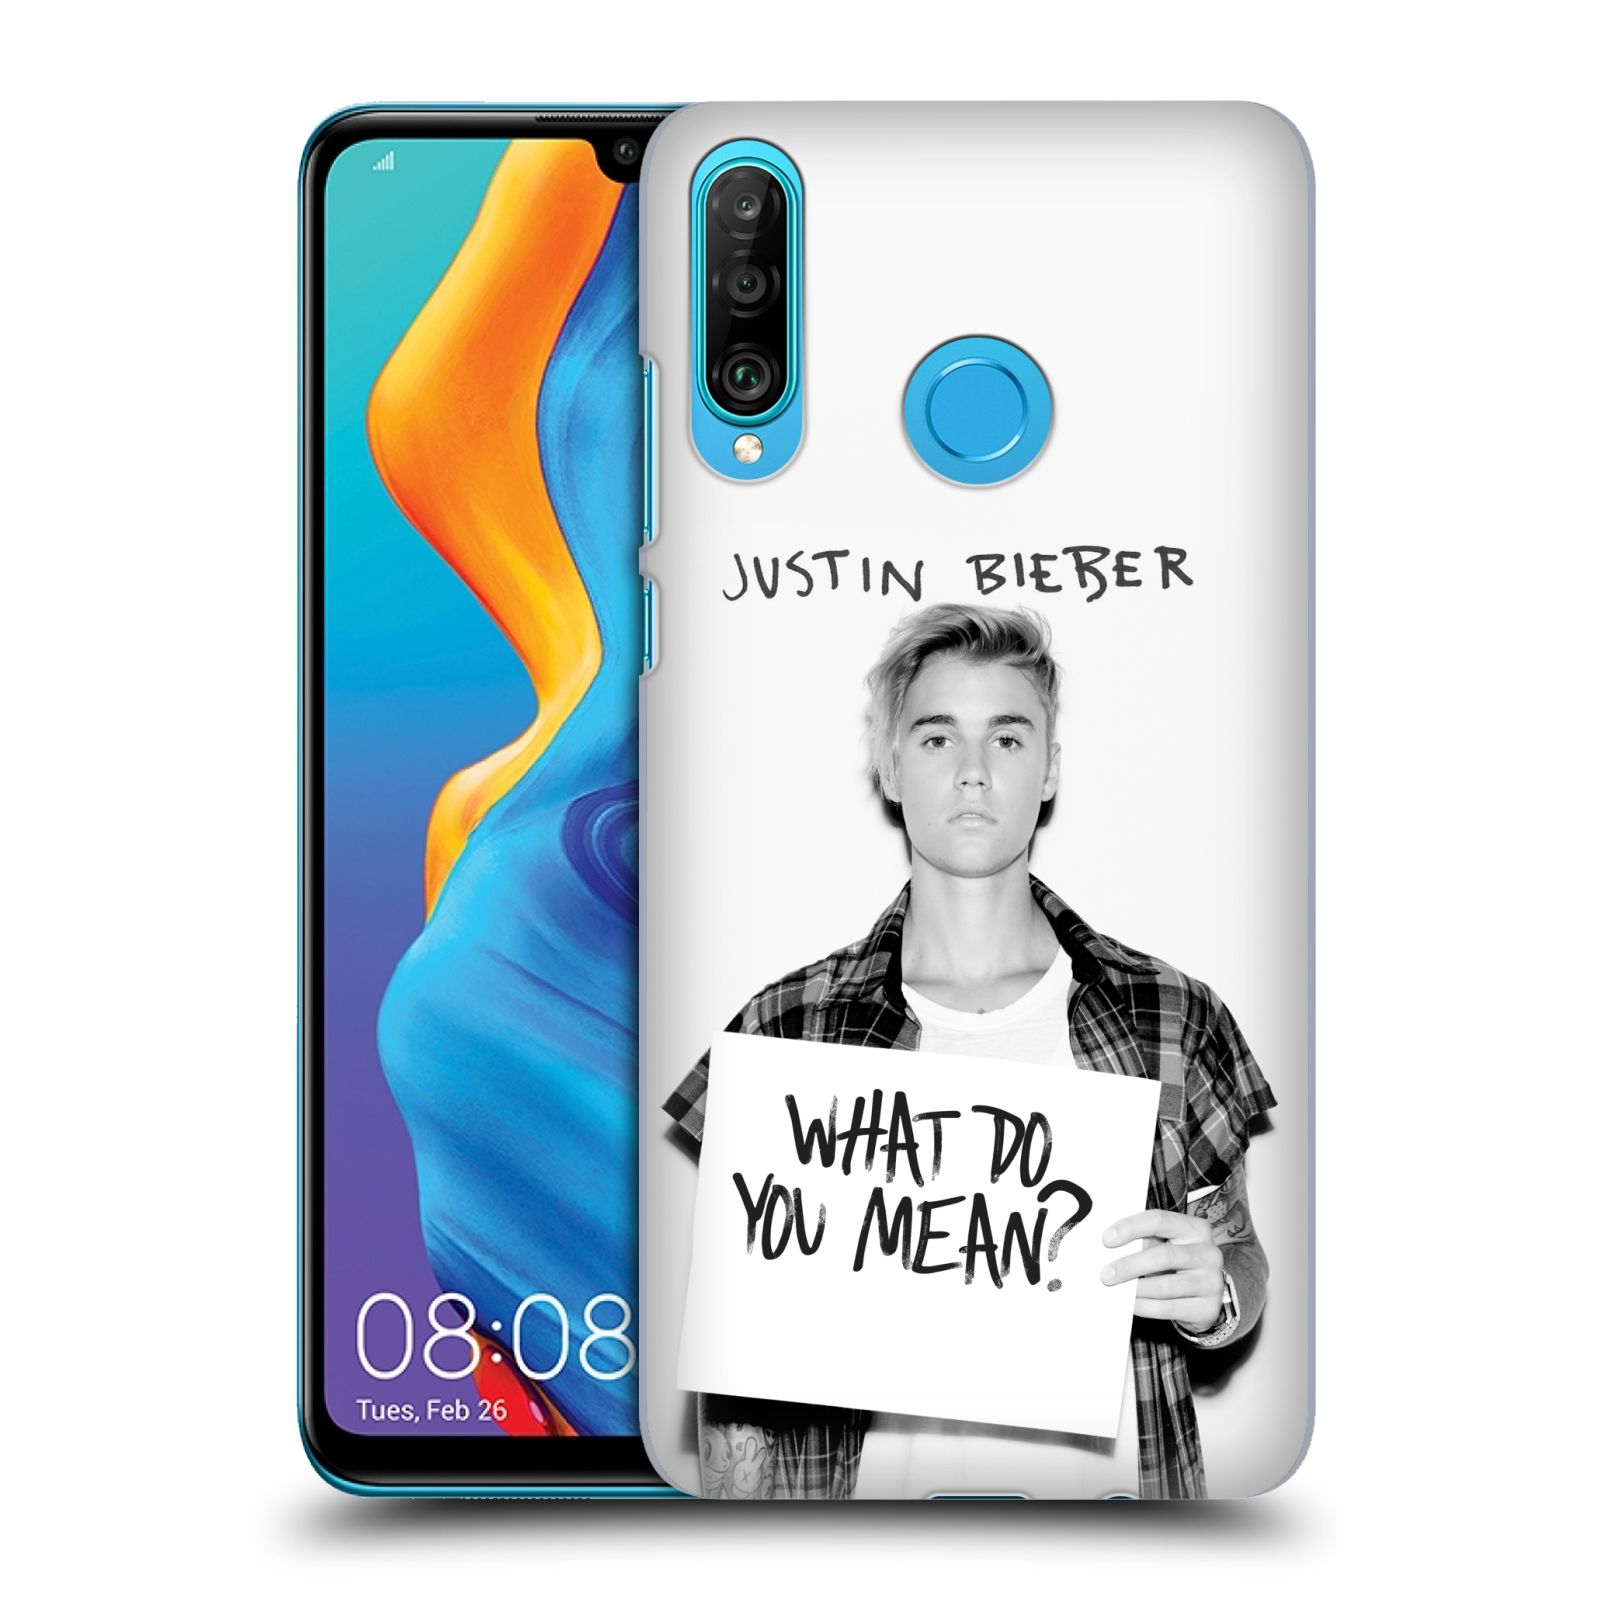 Pouzdro na mobil Huawei P30 LITE - HEAD CASE - Justin Bieber foto Purpose What do you mean